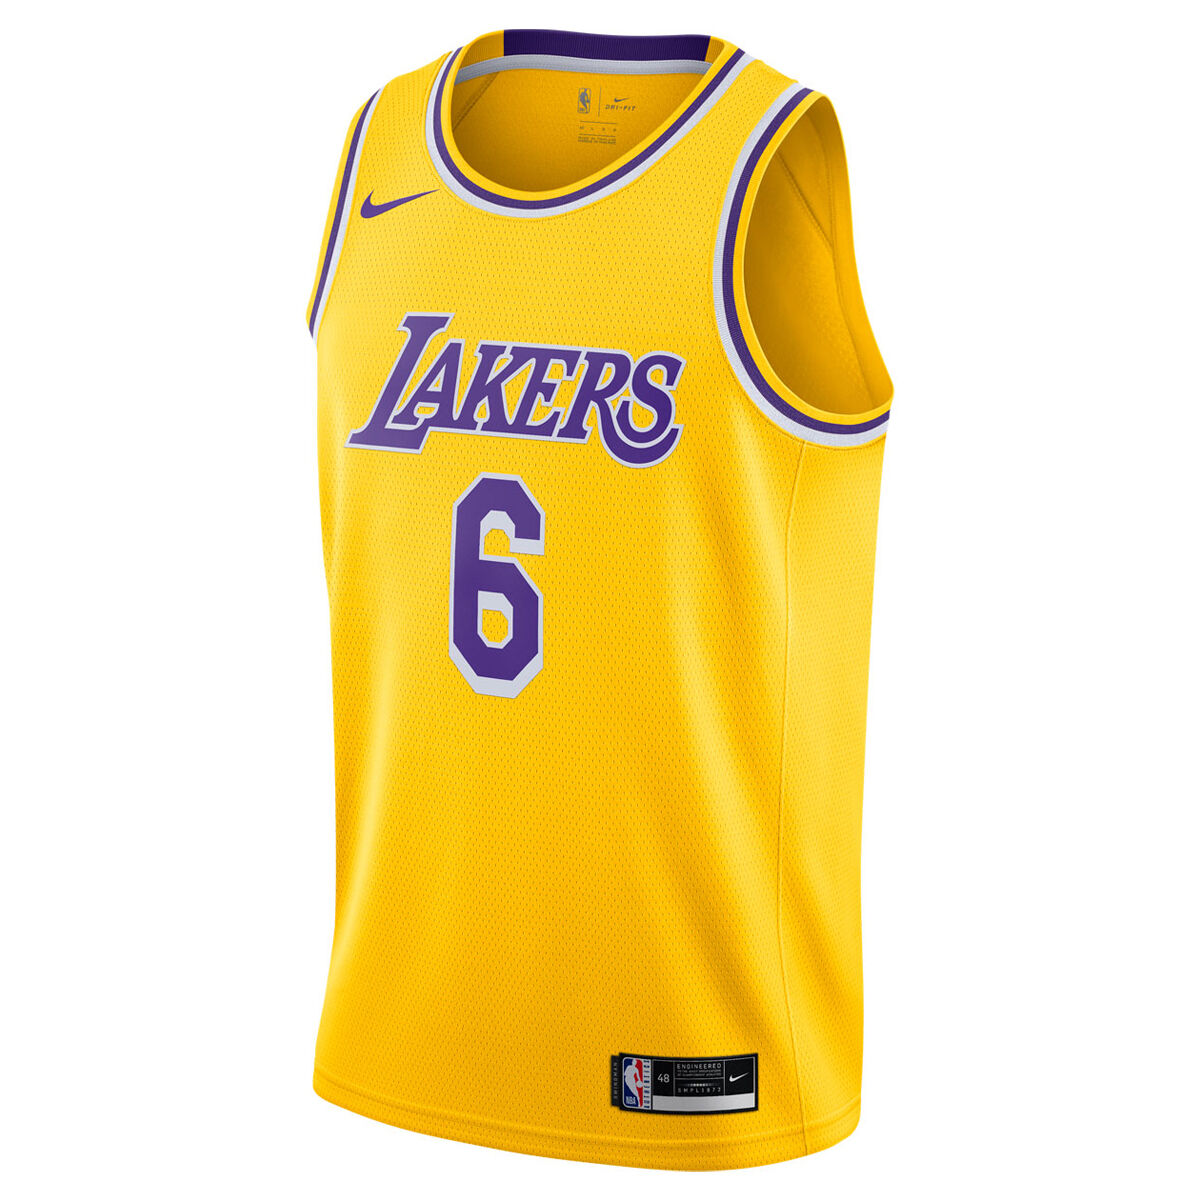 NBA Jerseys & Teamwear | NBA Merchandise & Fangear | rebel